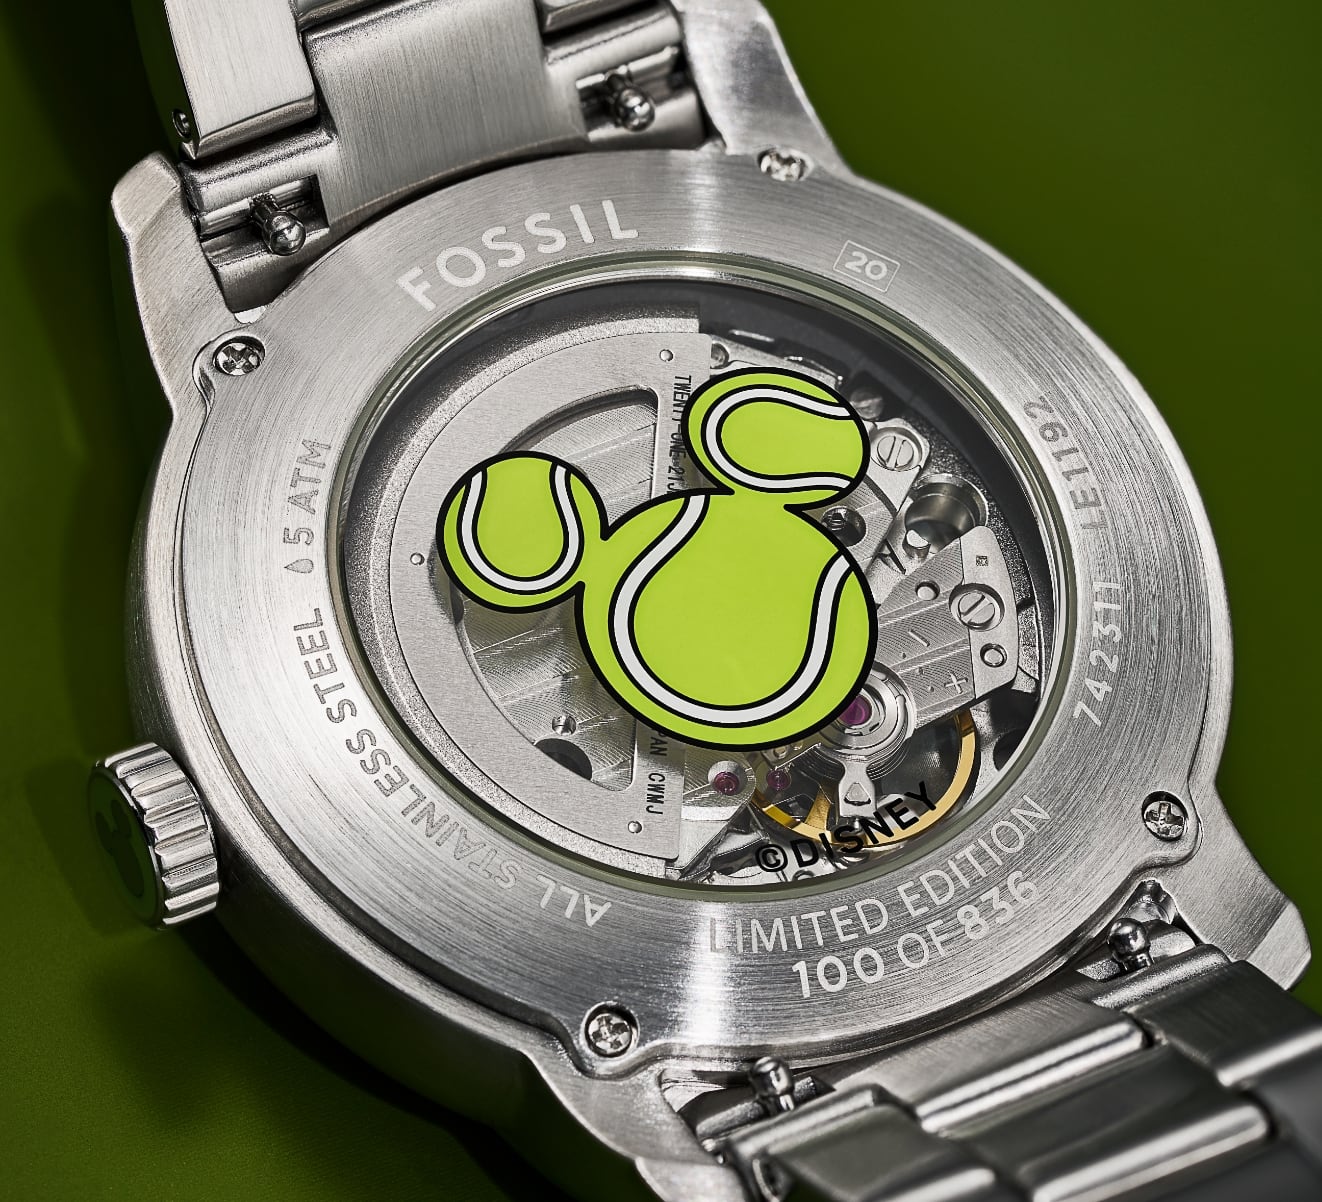 Un GIF de deux images montrant le dos et la couronne personnalisés de la montre, tous deux caractérisés par une silhouette de Mickey Mouse de Disney inspirée par les balles de tennis.